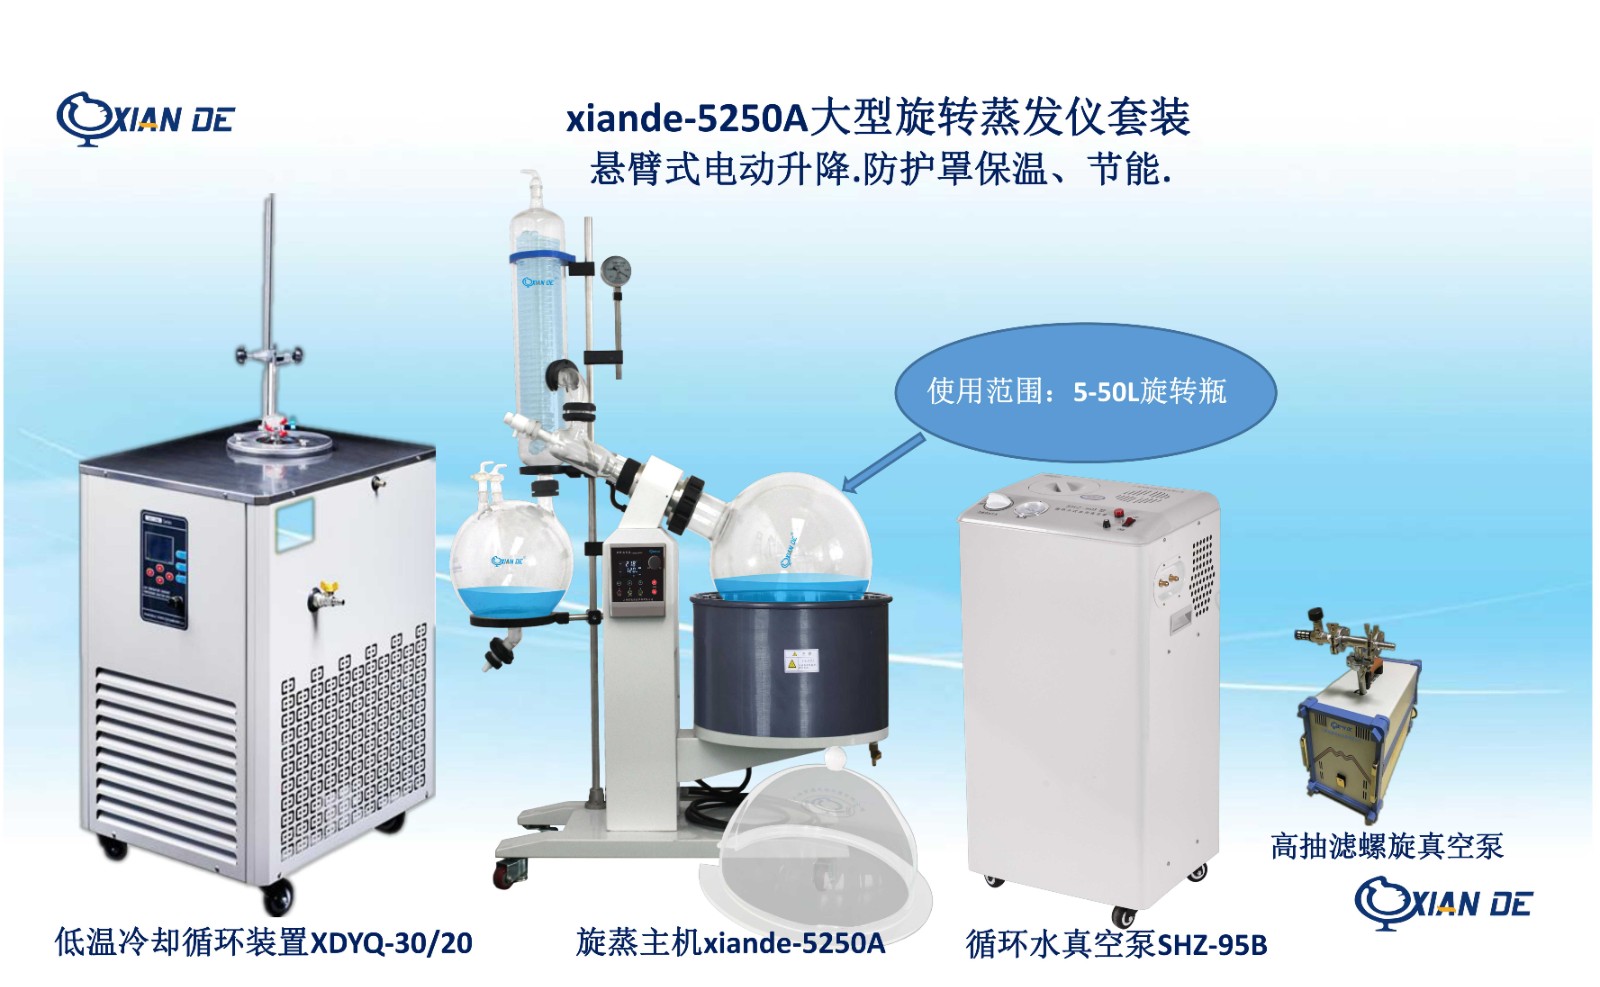 xiande-5250A大型旋转蒸发仪.jpg